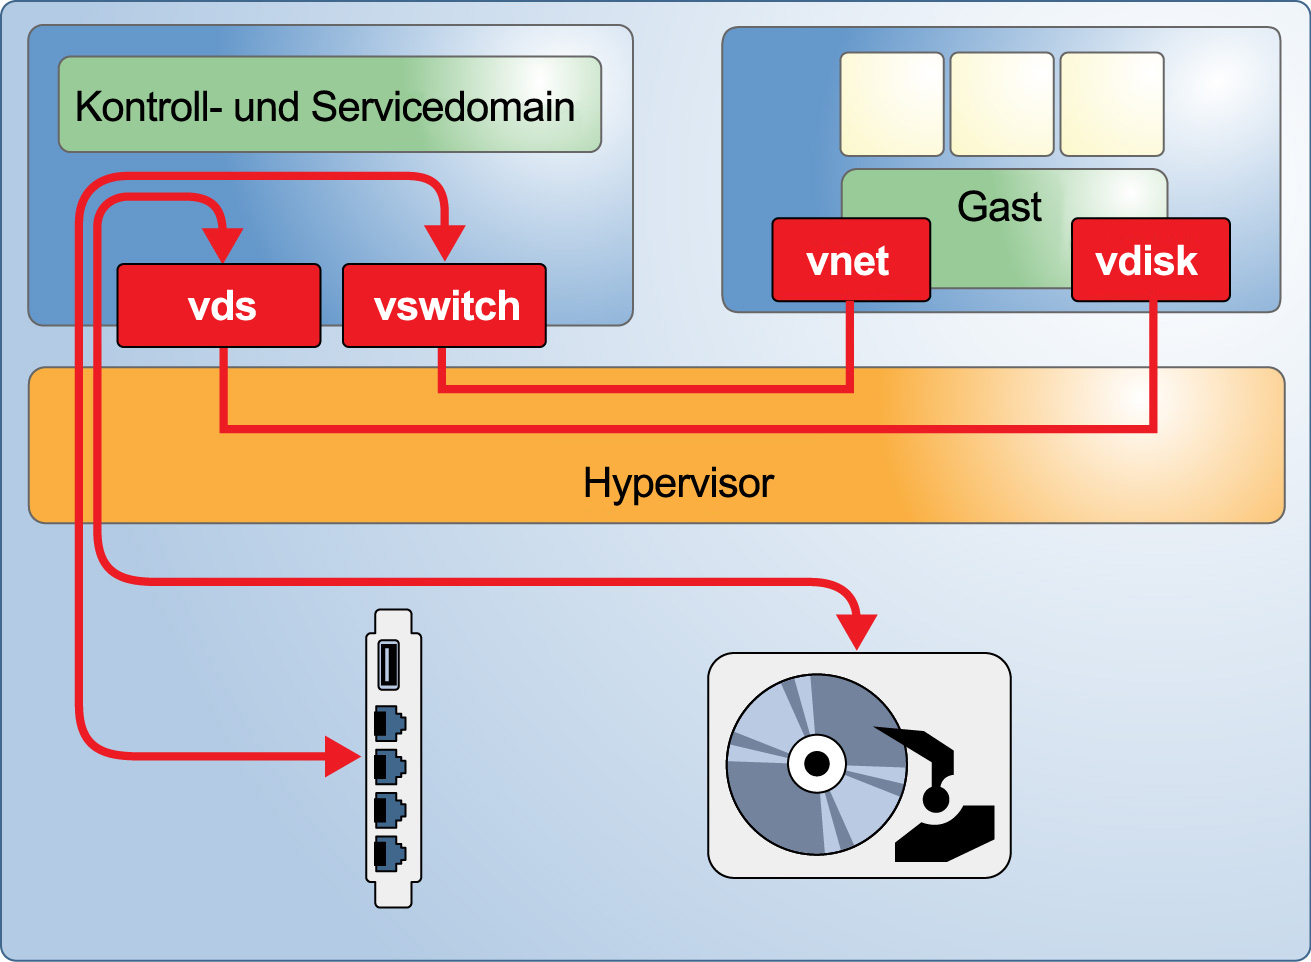 image:In der Grafik wird eine allgemeine Oracle VM Server for SPARC-Umgebung mit einer Kontrolldomain dargestellt, die einer Gastdomain Services und Hardwareressourcen bereitstellt.